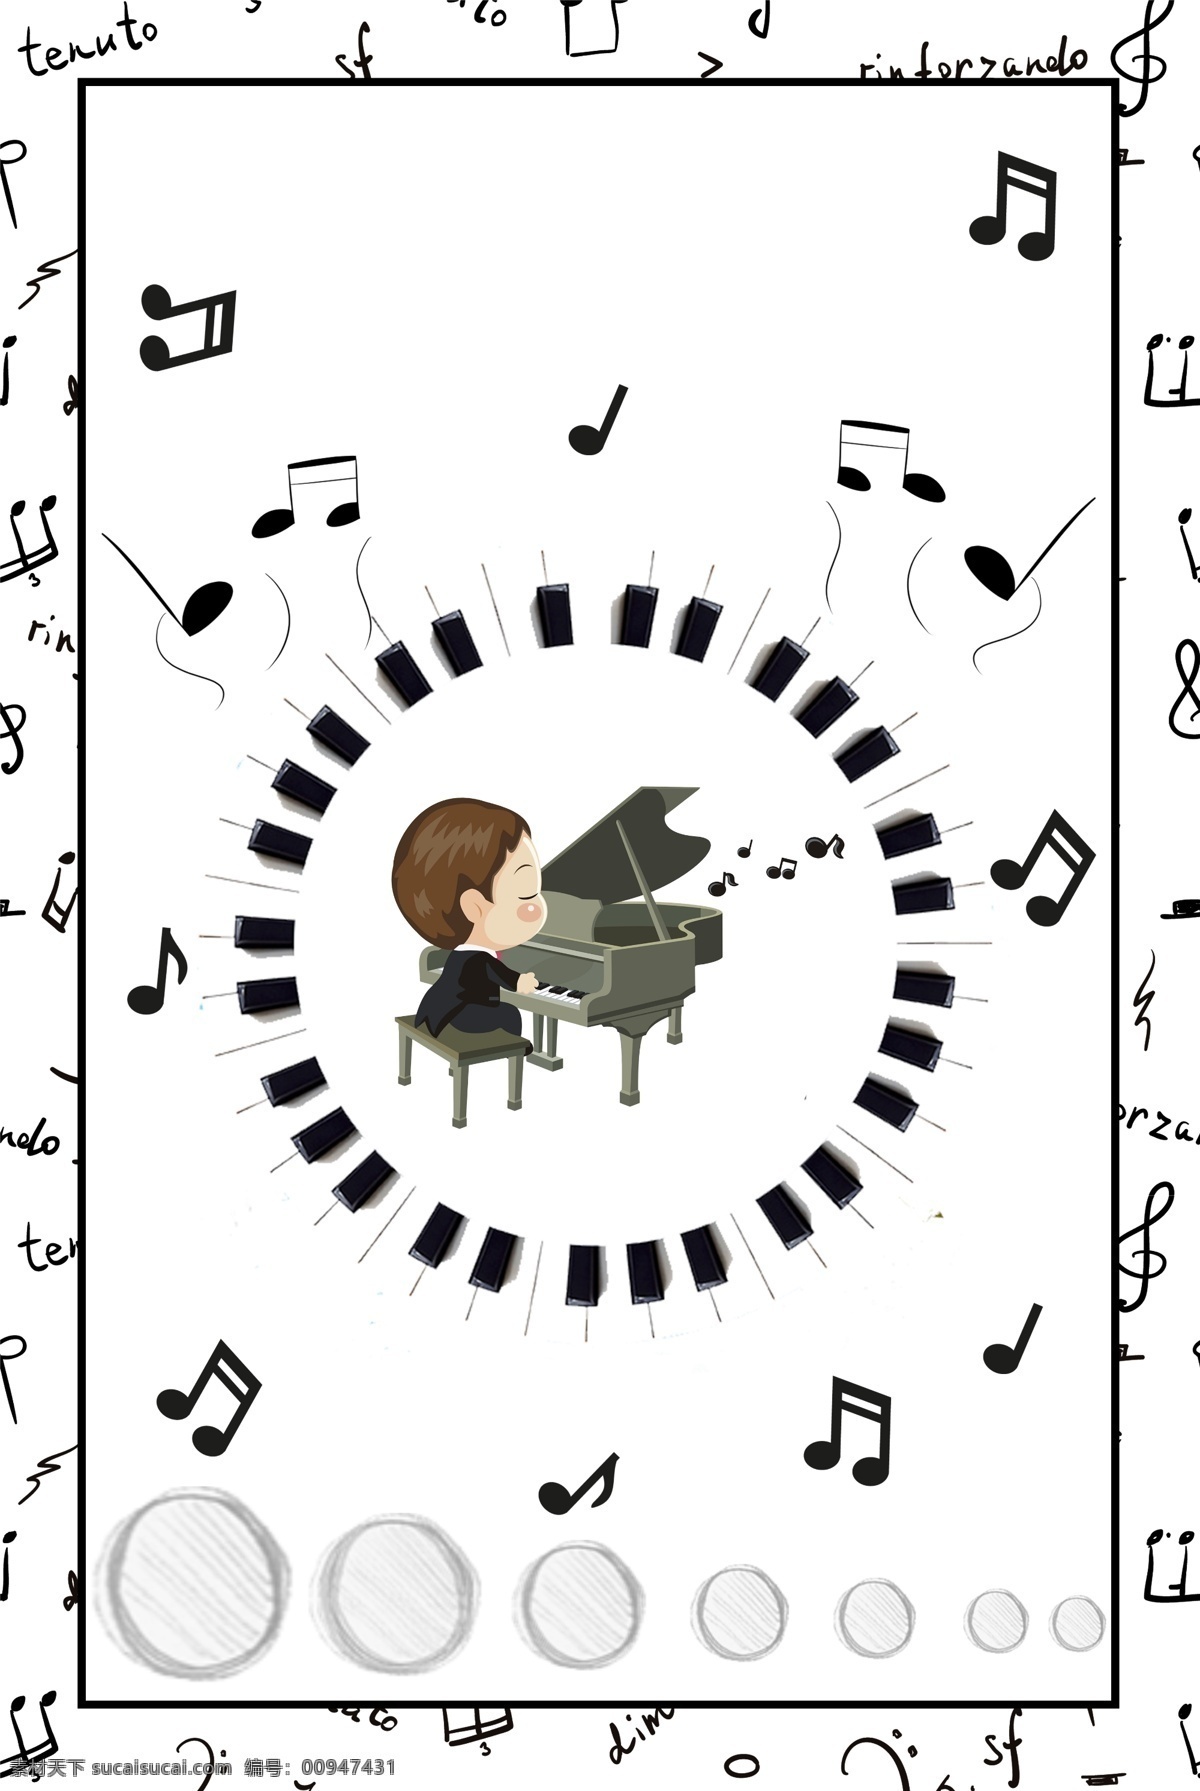 简约 音乐 钢琴 背景 海报 学音乐 弹钢琴 电钢琴 乐器 琴凳 线稿 黑白